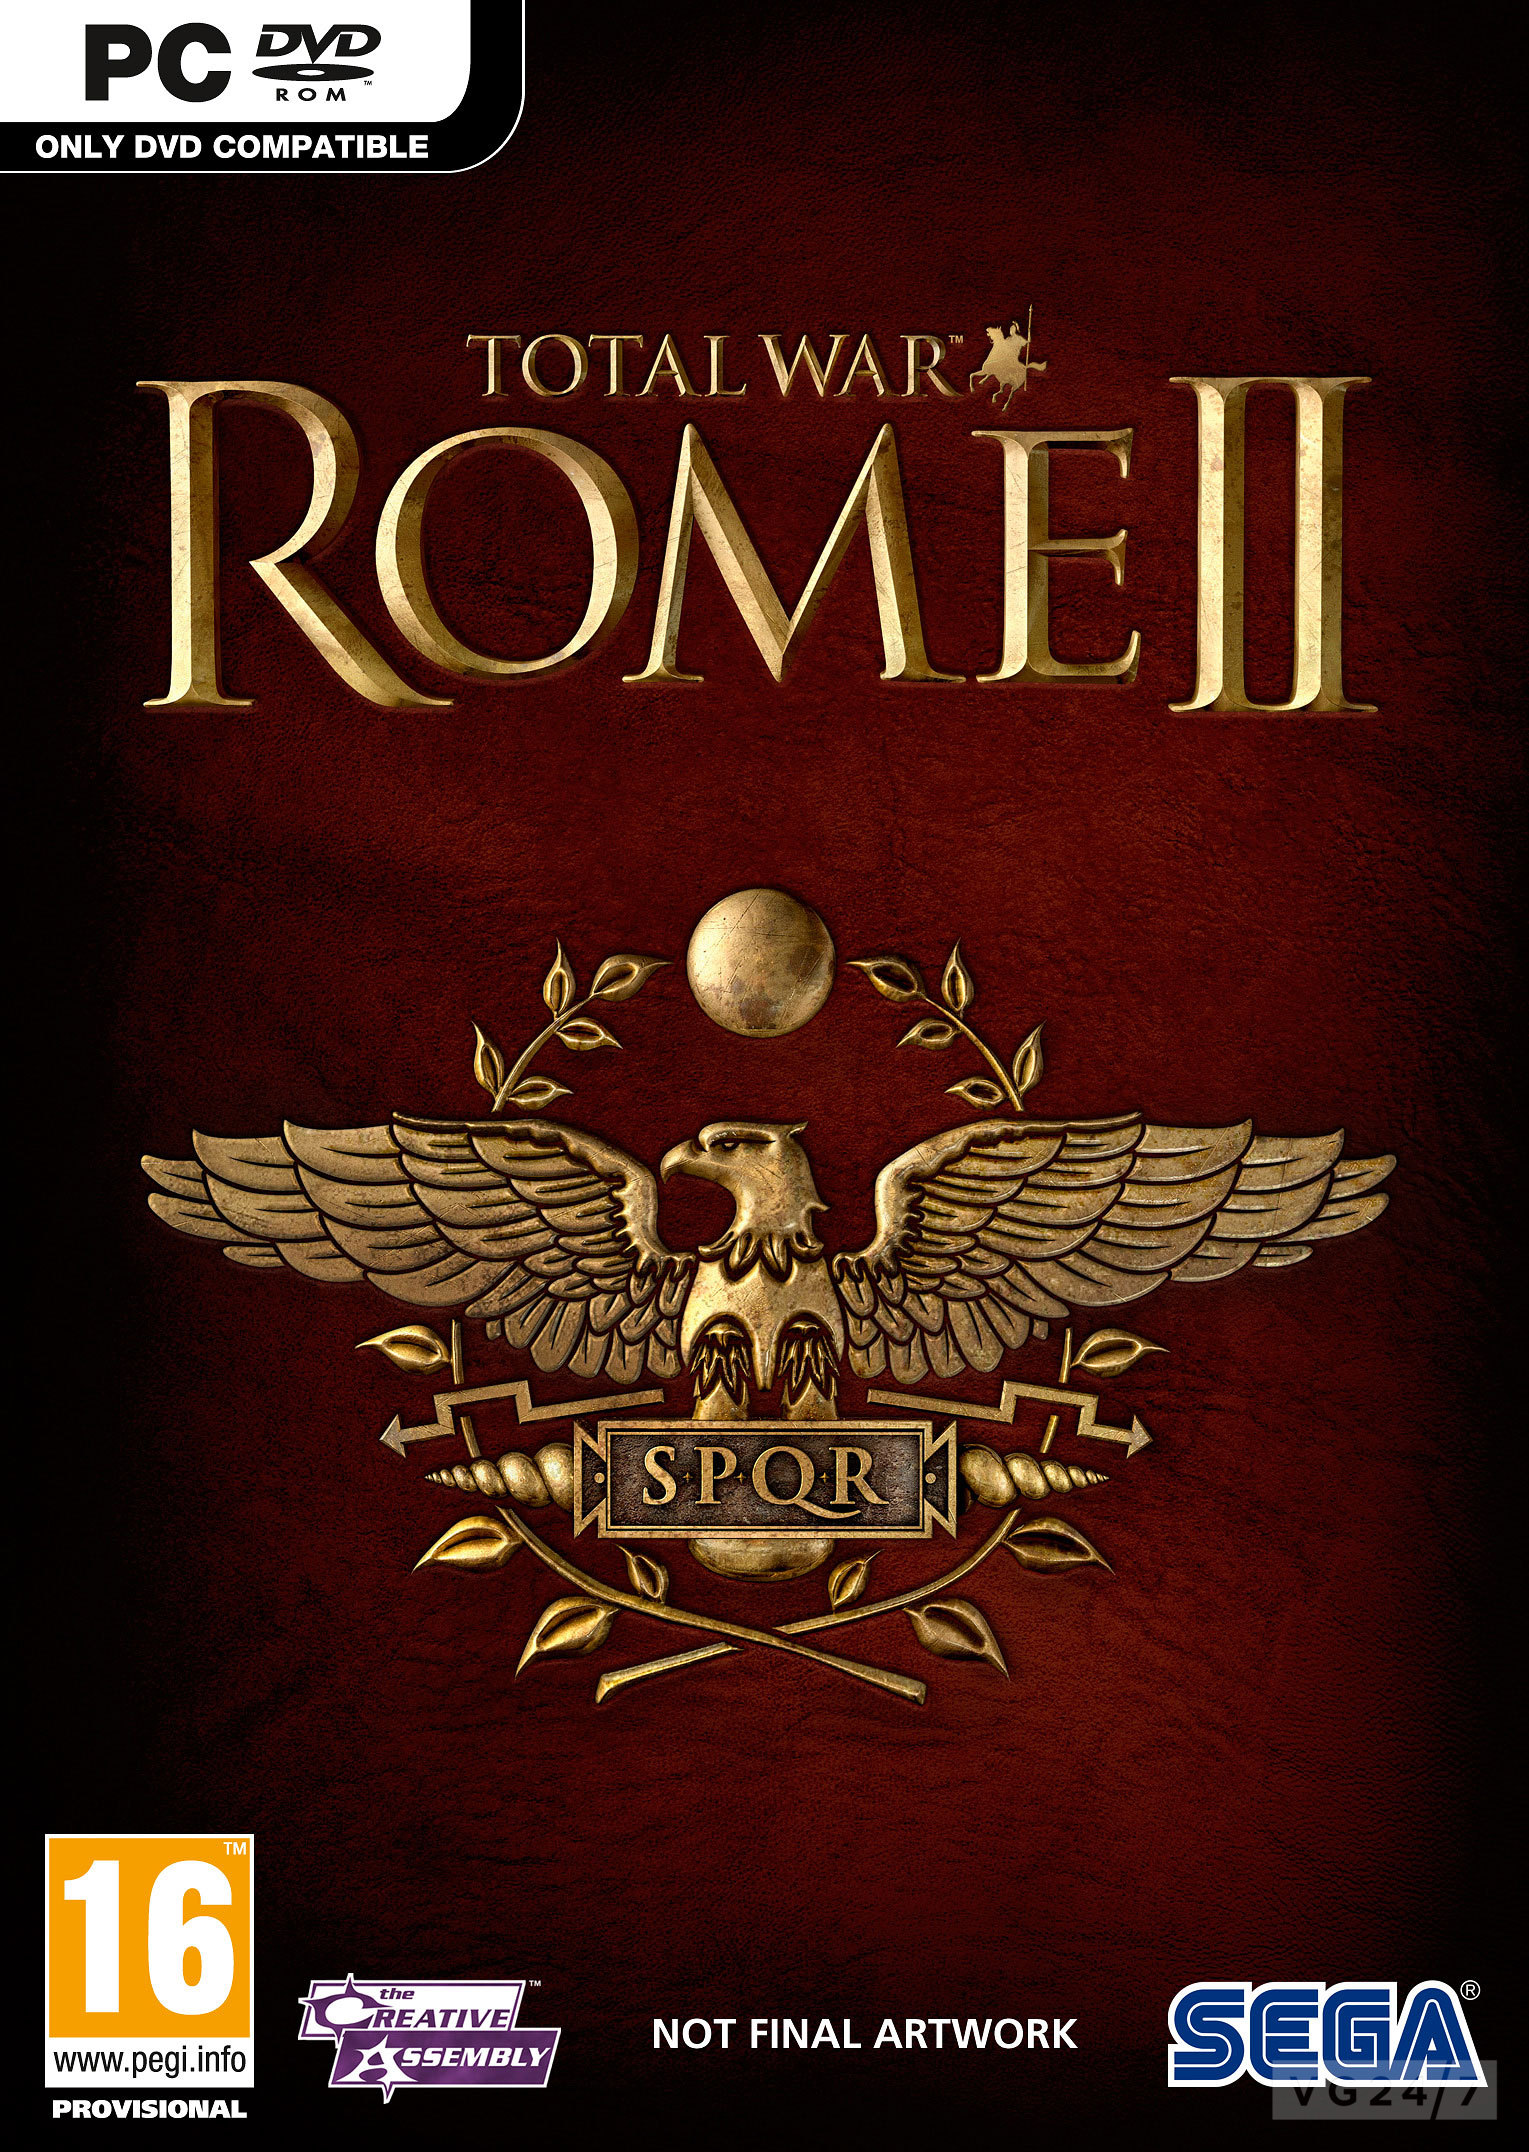 Total War Rome 2 from Mechanics